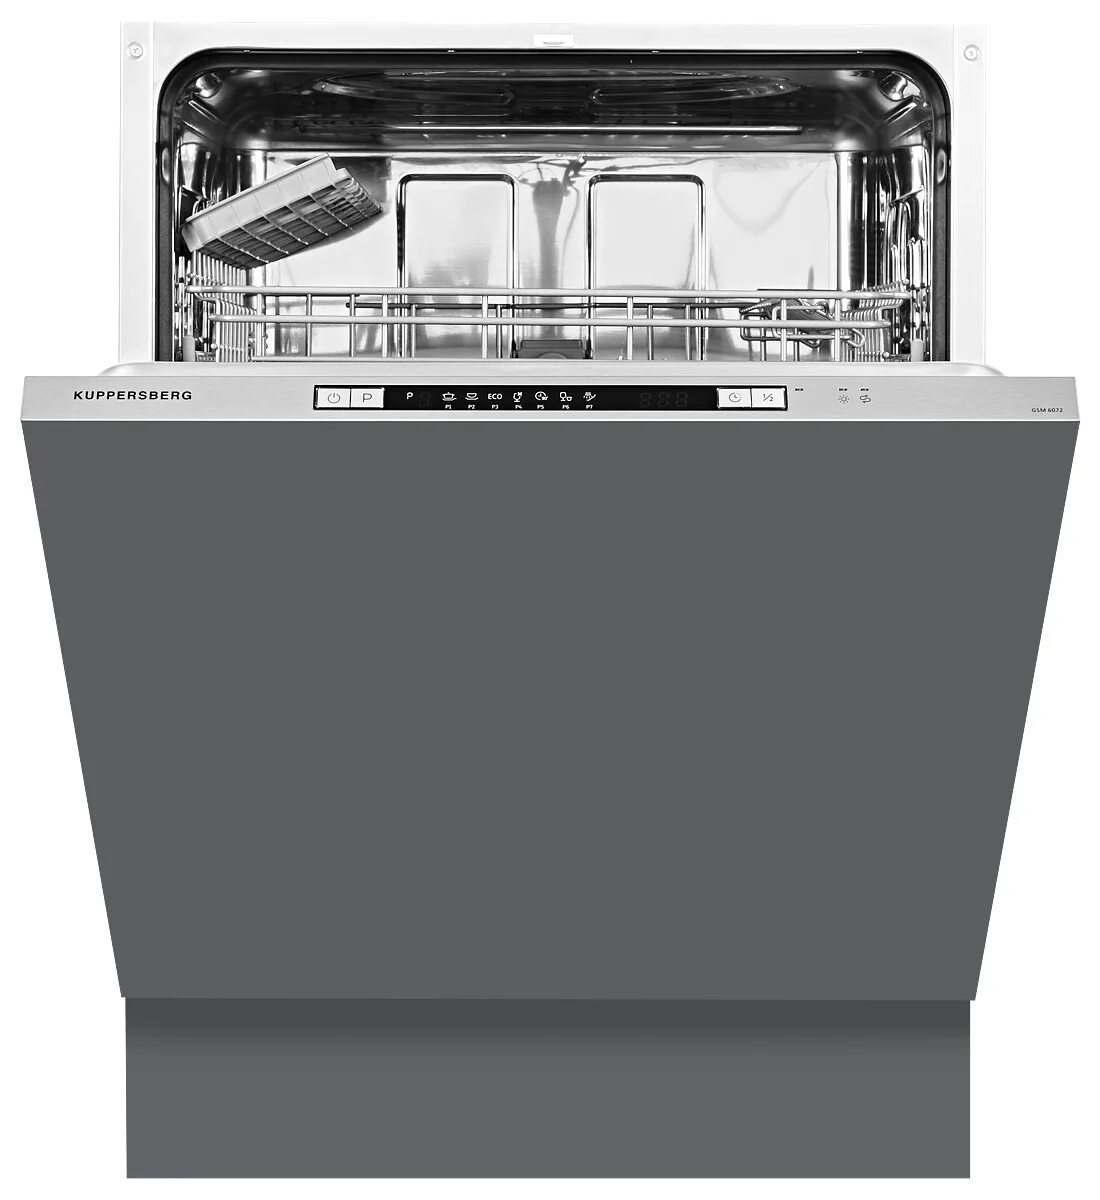 Kuppersberg gsm отзывы. Встраиваемая посудомоечная машина Kuppersberg GSM 6072. Посудомоечная машина Kuppersberg GS 6005. Встраиваемая посудомоечная машина Kuppersberg GSM 6073. Куперсберг встраиваемые посудомоечные машины 60 см.